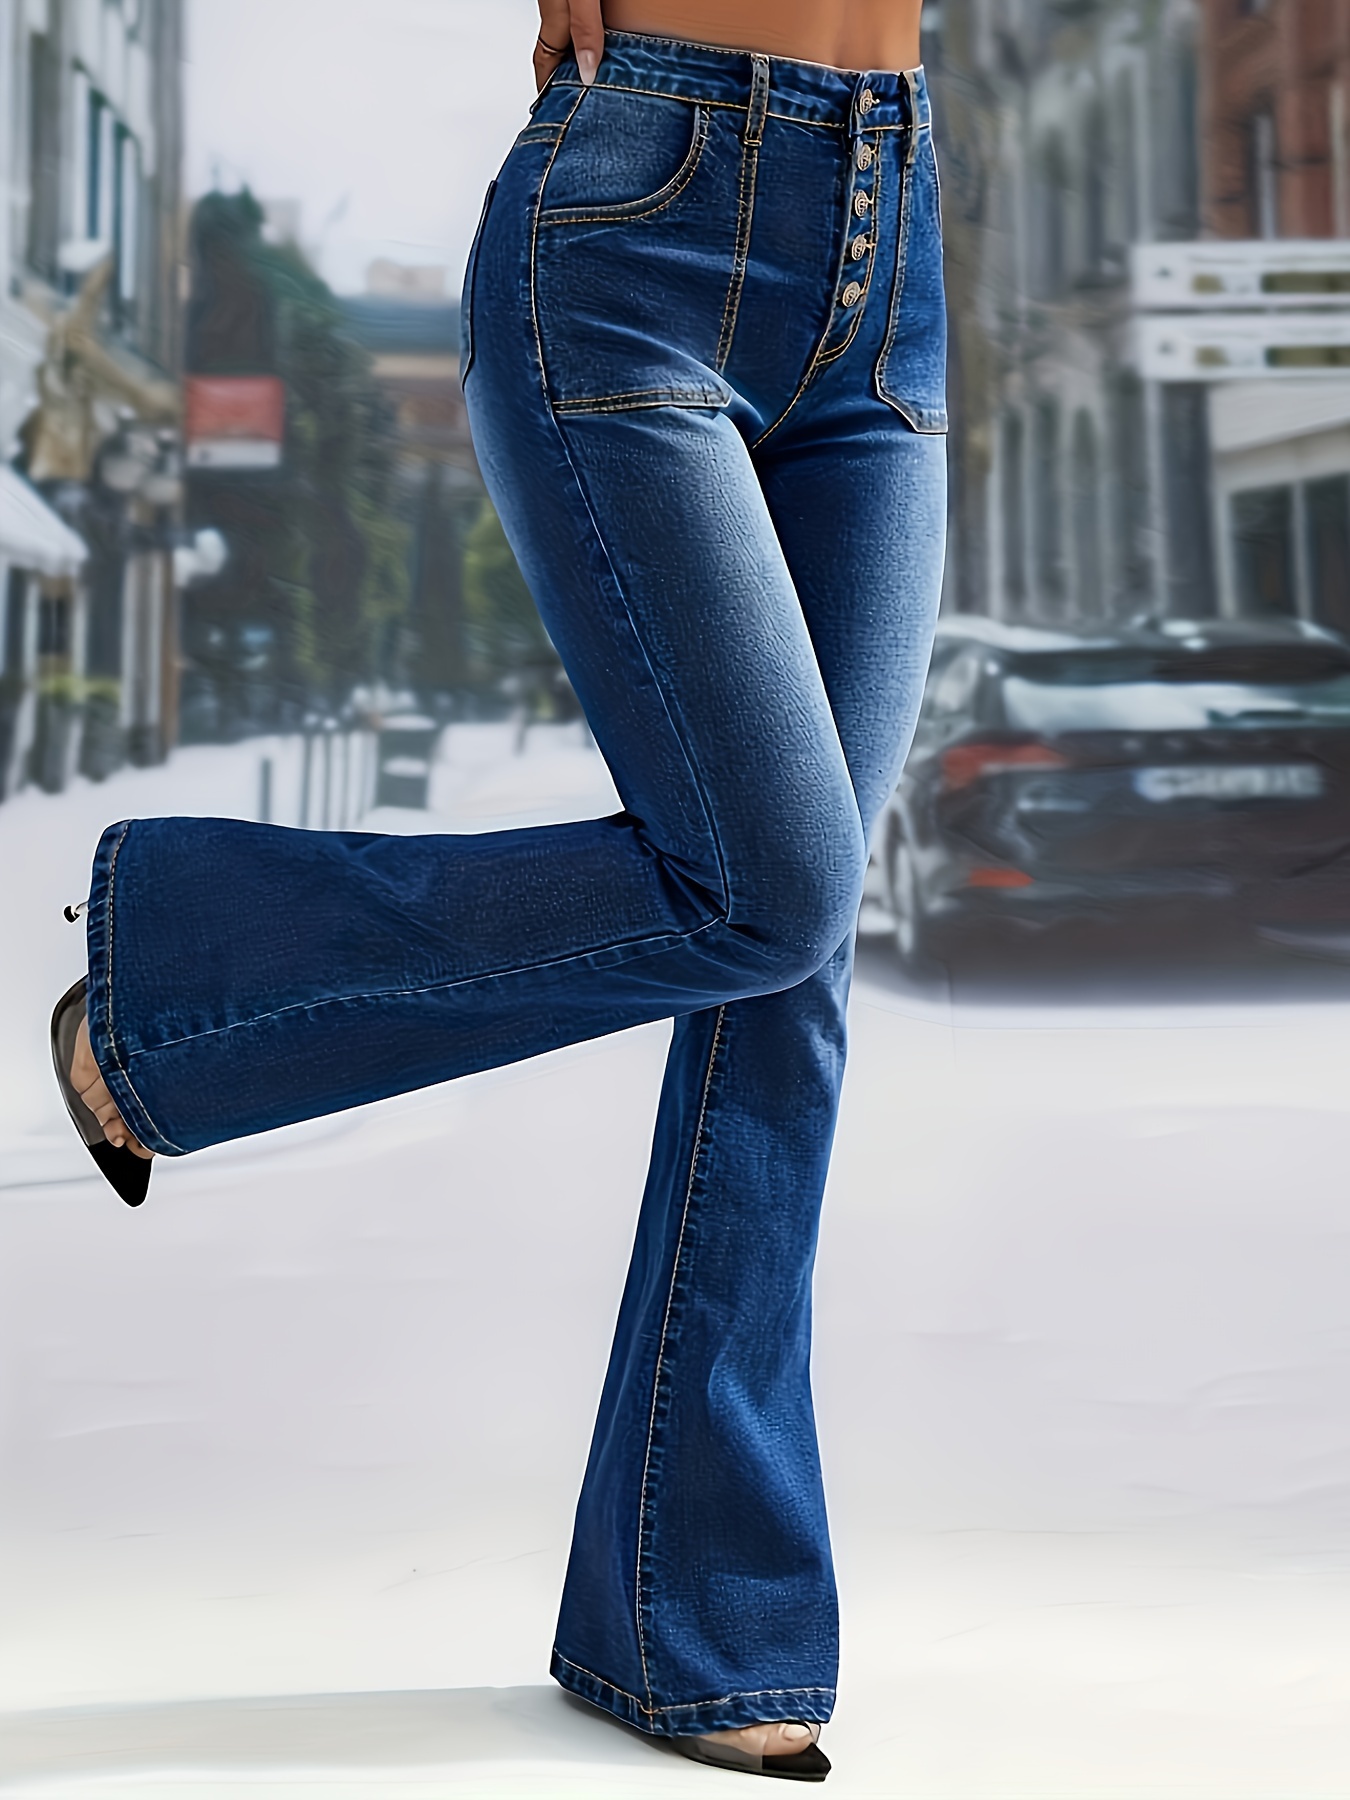 Jeans Acampanados De Cintura Alta Azul, Pantalones De Mezclilla Con  Bolsillos Oblicuos Y Botón De Campana En La Parte Inferior, Jeans Y Ropa De  Mezcli